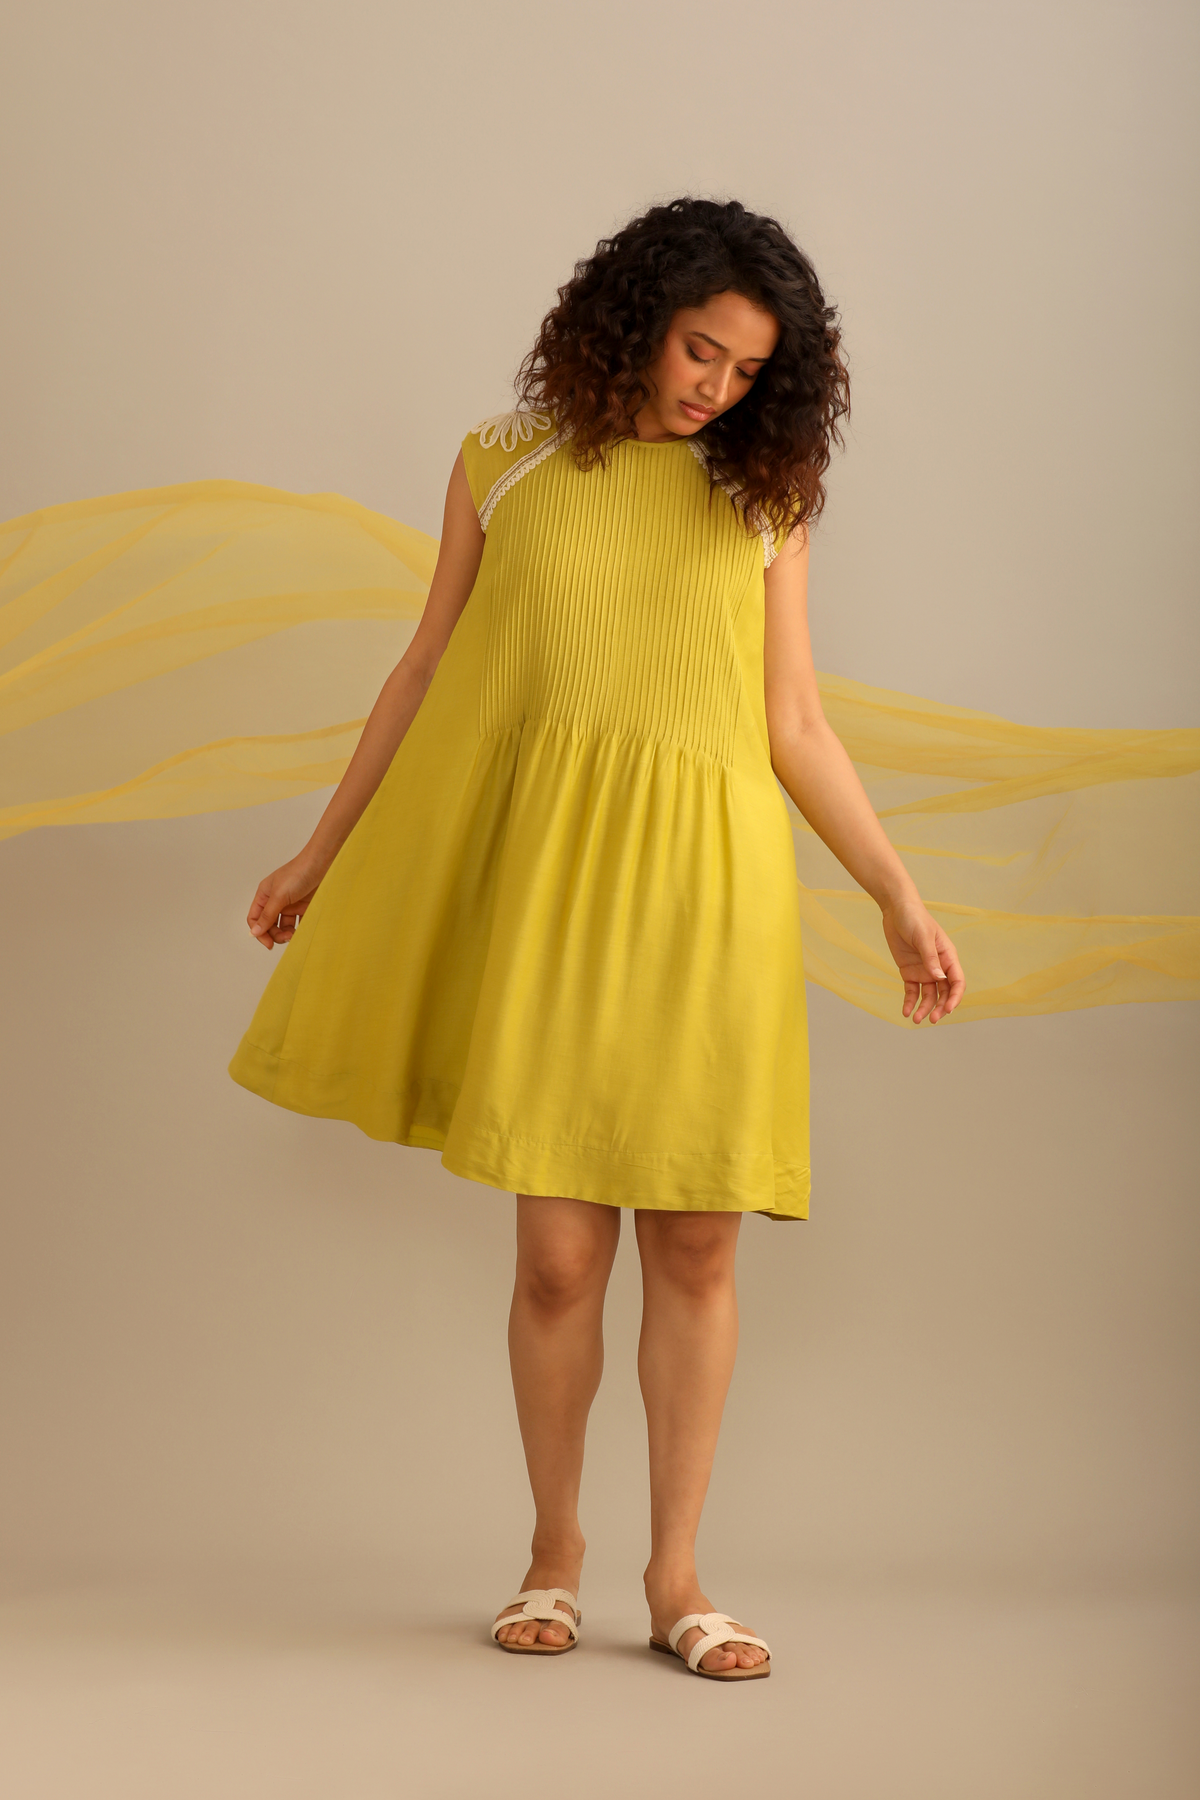 A Lime Cotton Dress